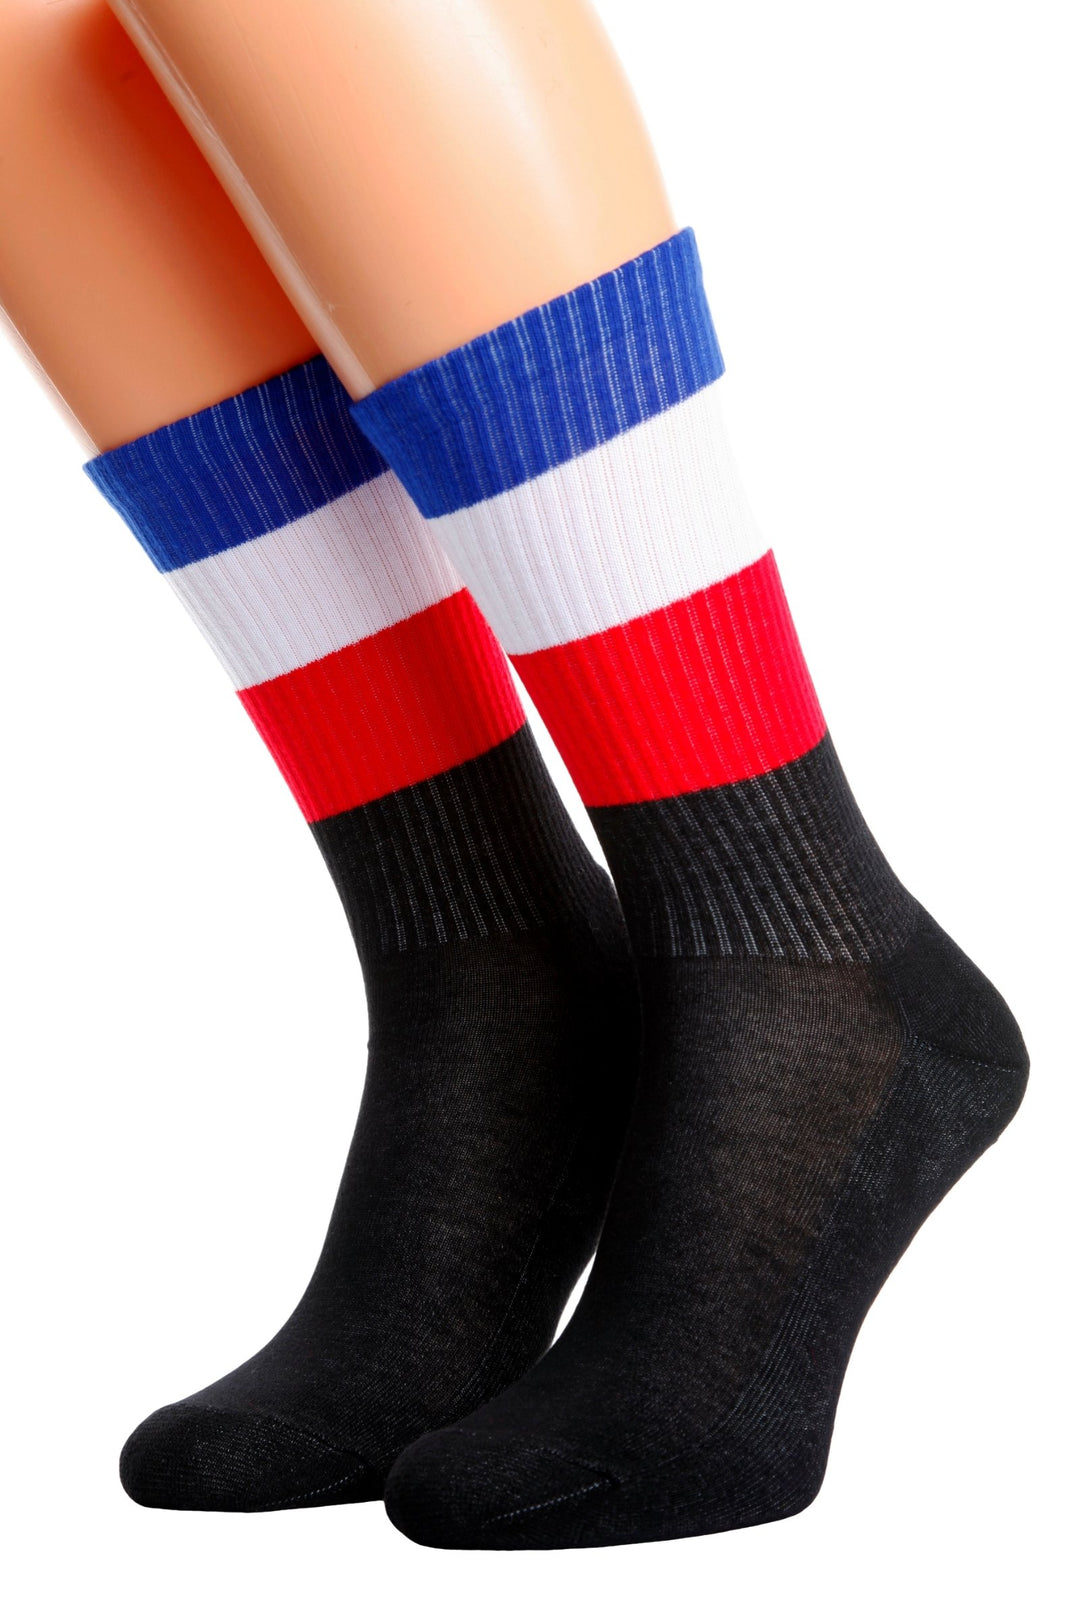 FRANCE flag socks for men and women